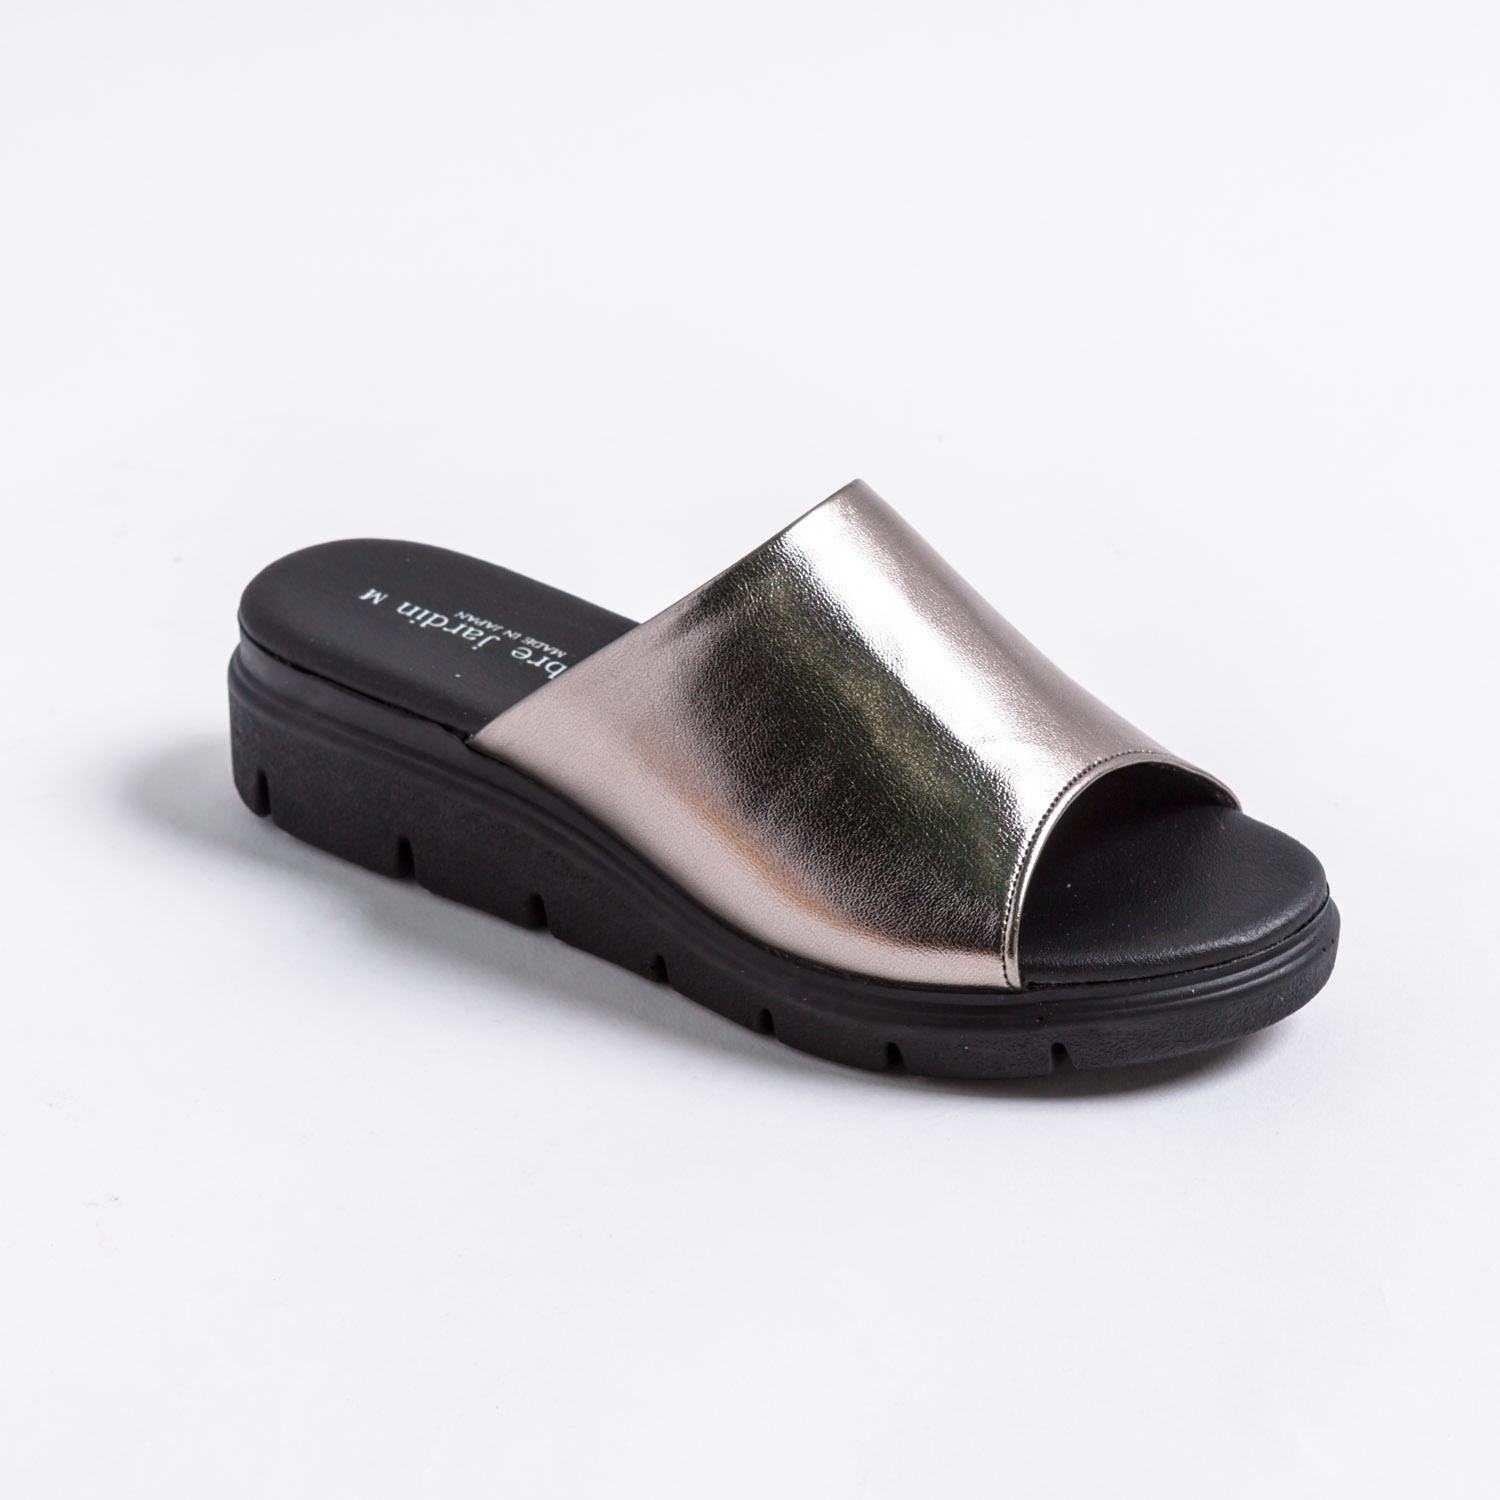 サンダル レディース つっかけ 日本製 黒 厚底 歩きやすい ウェッジソール 履きやすい サンダル